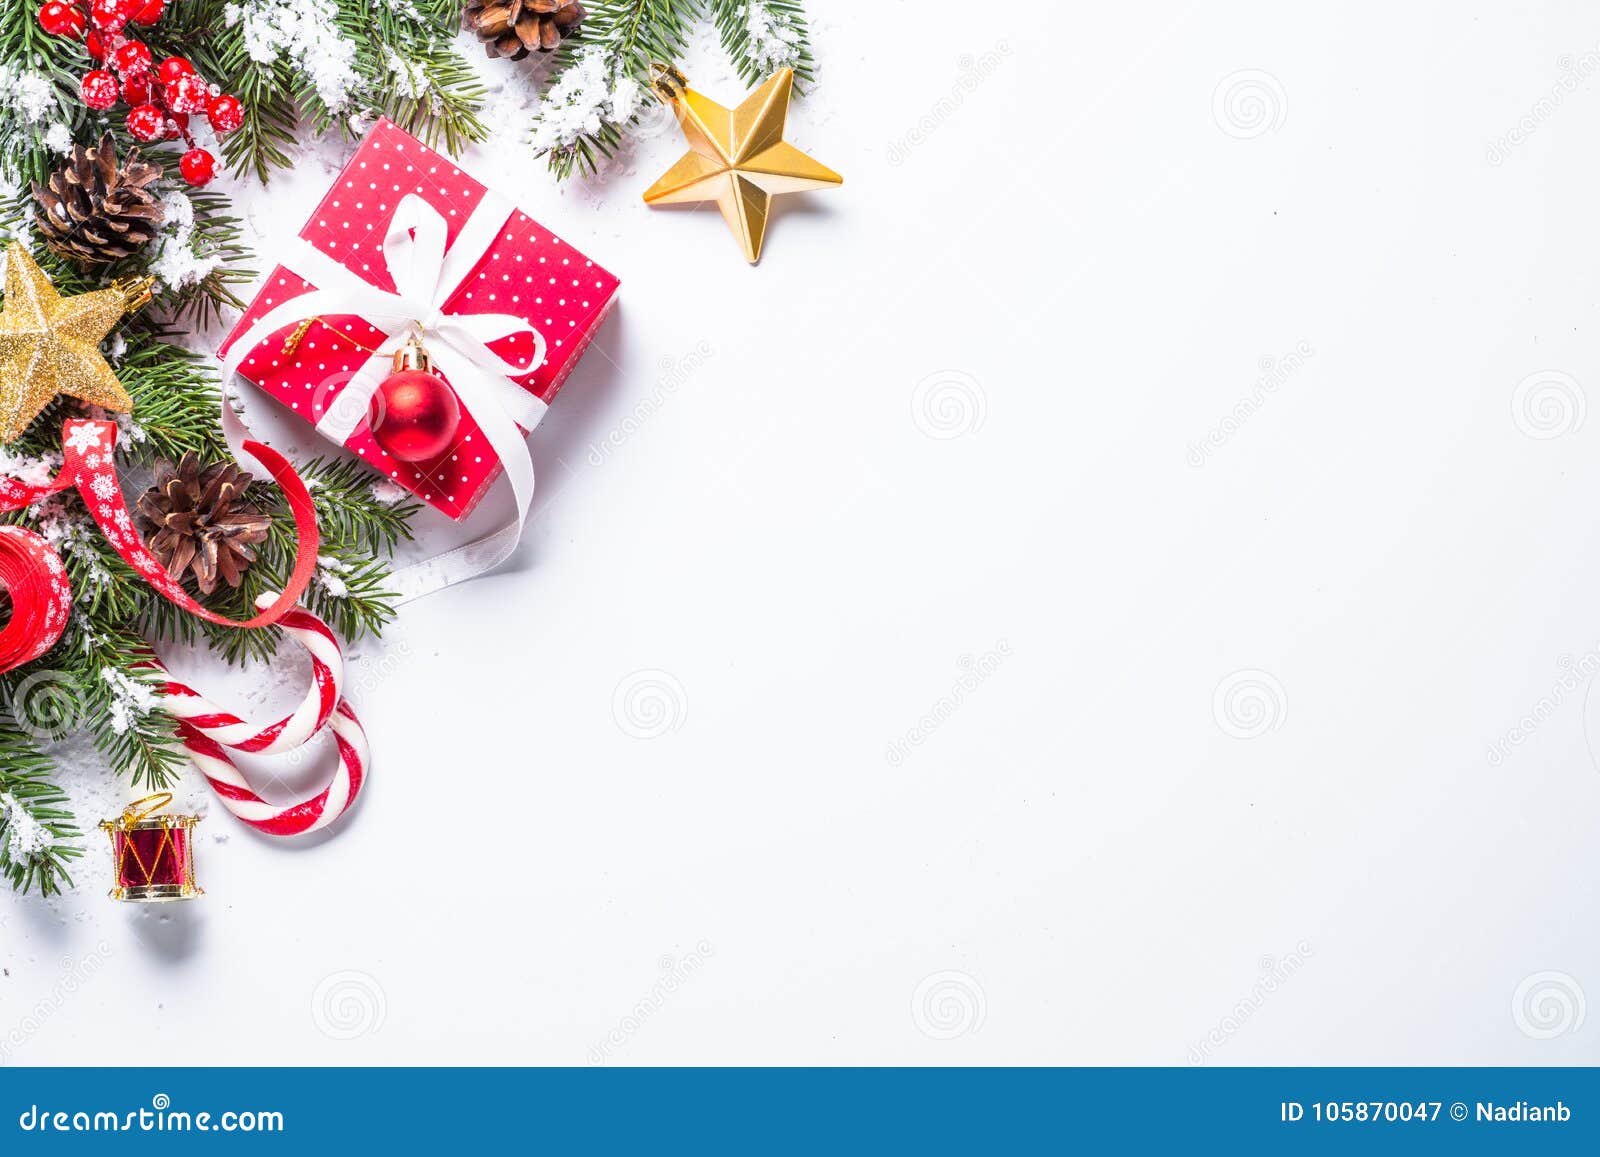 Hãy để Nền trắng quà tặng Giáng sinh sang trọng mang đến cho bạn những trải nghiệm đáng nhớ trong dịp lễ này. Những món quà đẹp và đặc biệt chắc chắn sẽ làm gan của người nhận rung động. Với những hộp quà trắng tinh khiết và thiết kế tinh tế, bạn sẽ không thể chối từ món quà tuyệt vời này. Nhấn vào hình ảnh ngay để khám phá các sản phẩm quà tặng độc đáo này.